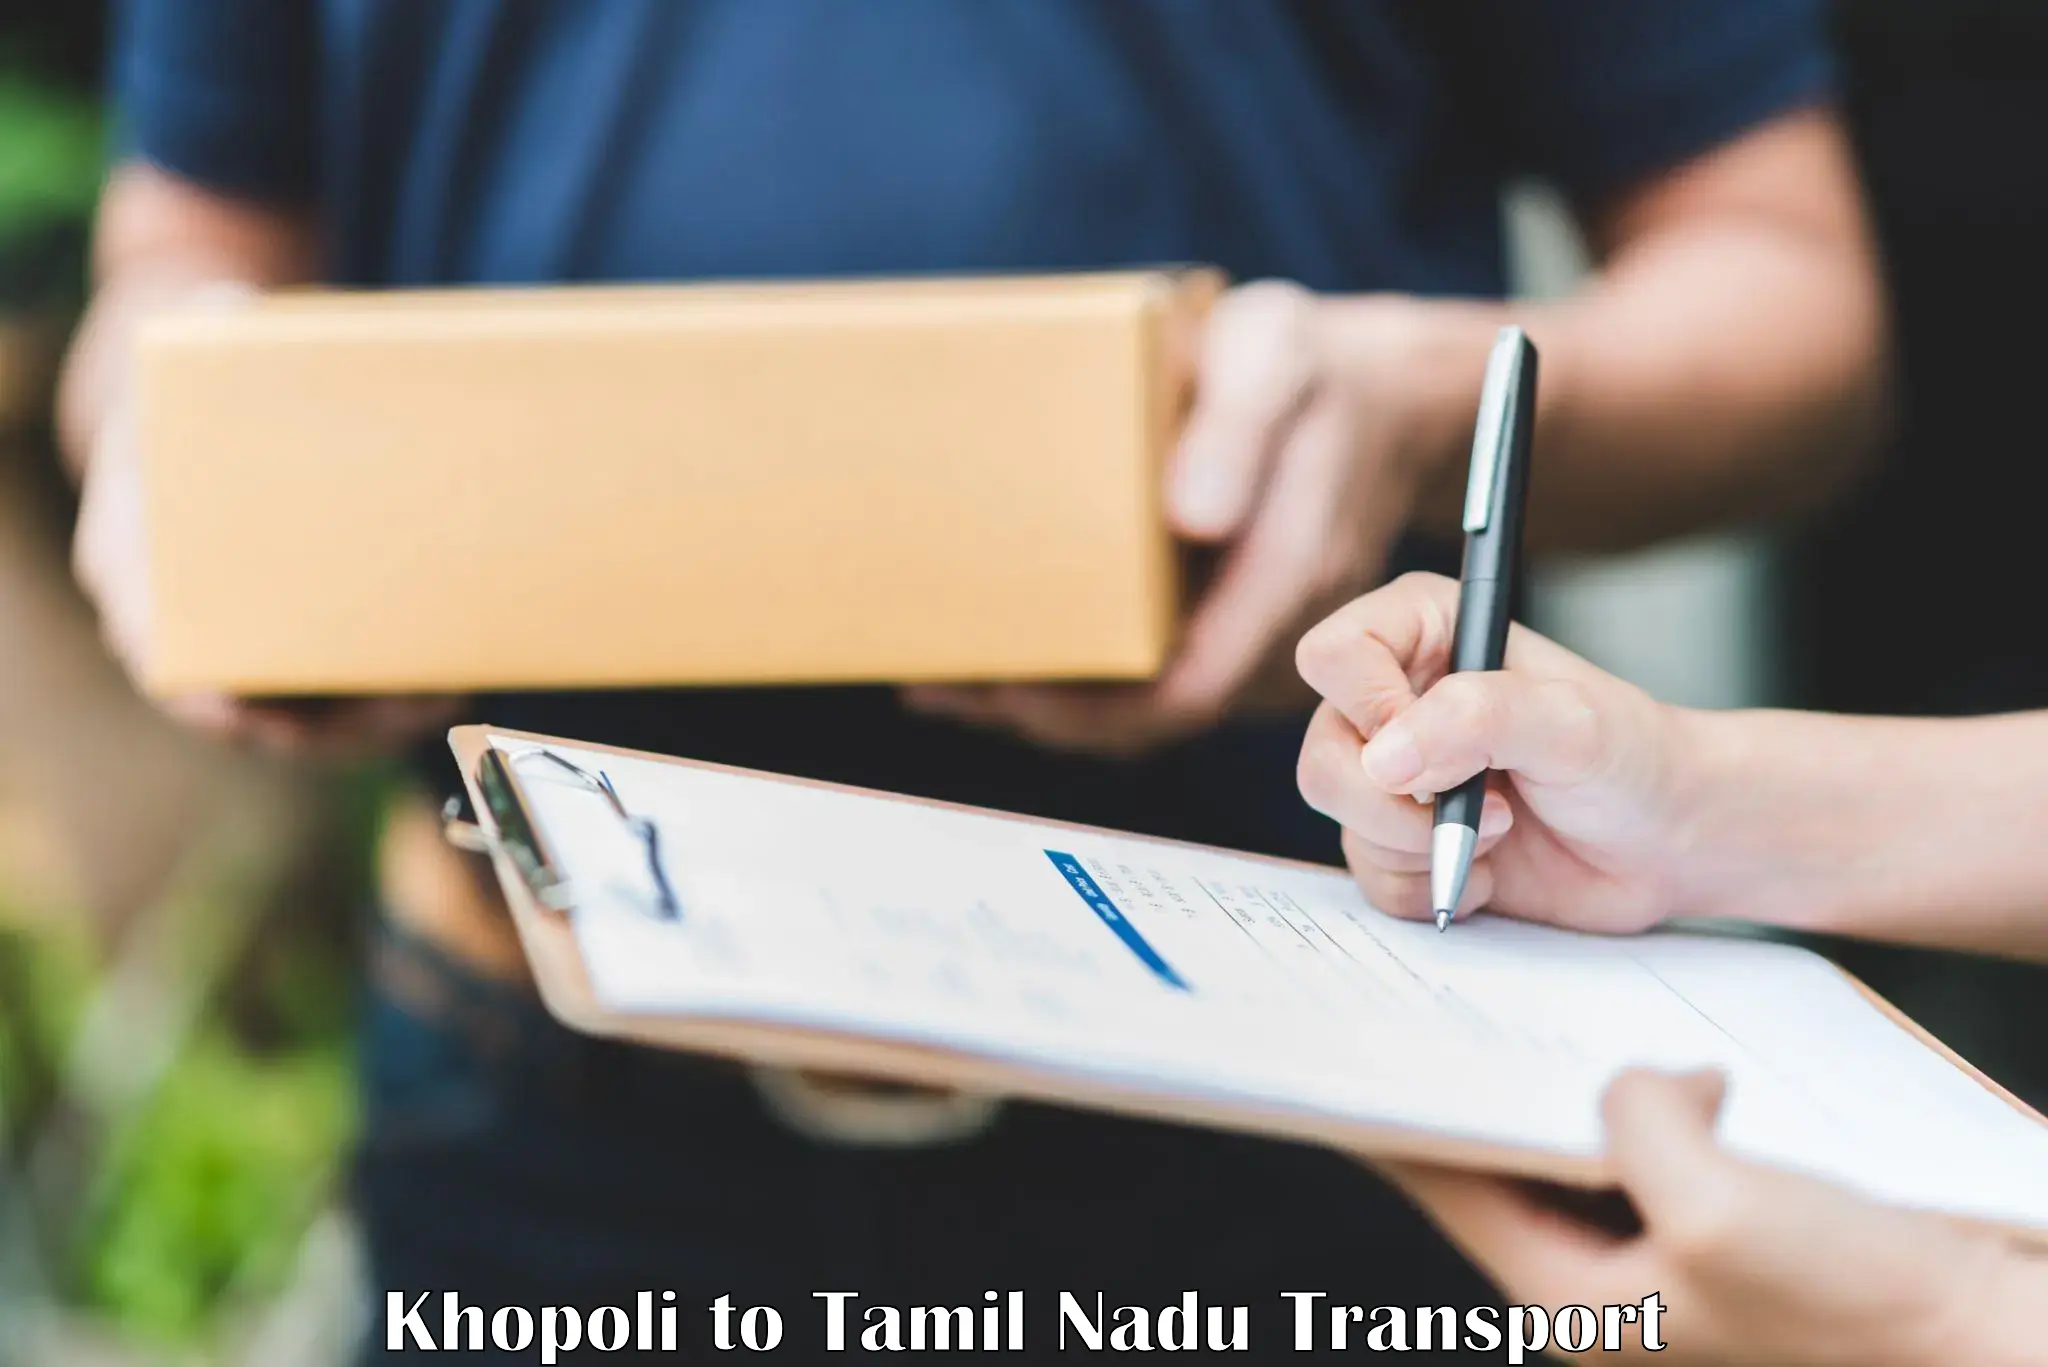 Nationwide transport services Khopoli to Muthukulathur